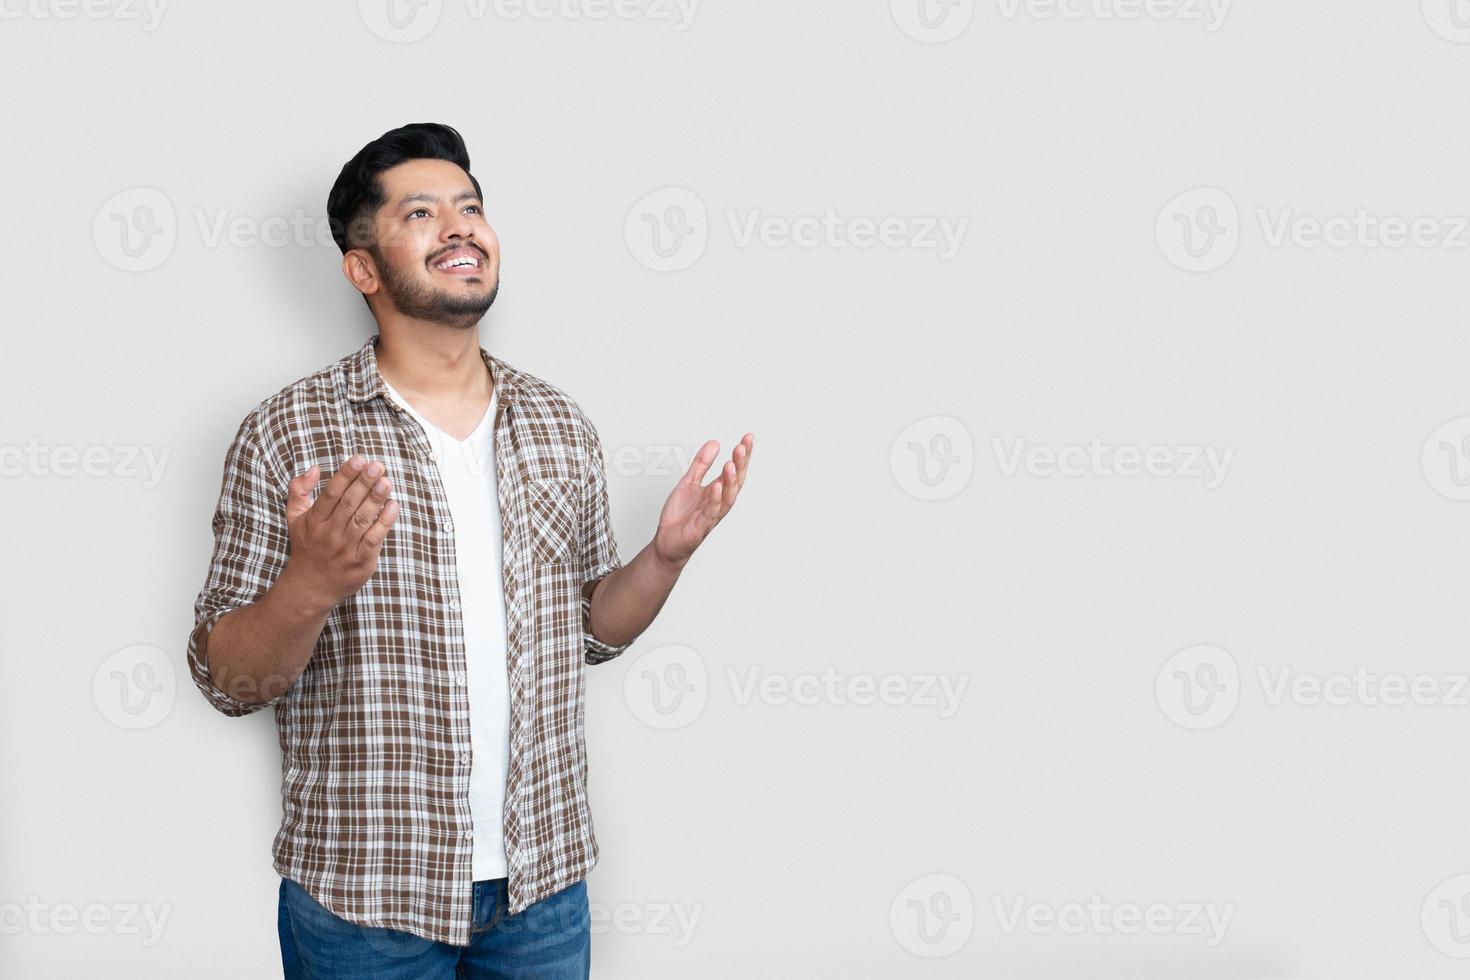 volwassen Aziatische man over geïsoleerde achtergrond gek en blij schreeuwen en schreeuwen met agressieve uitdrukking en opgeheven armen. gelukkig begrip. foto